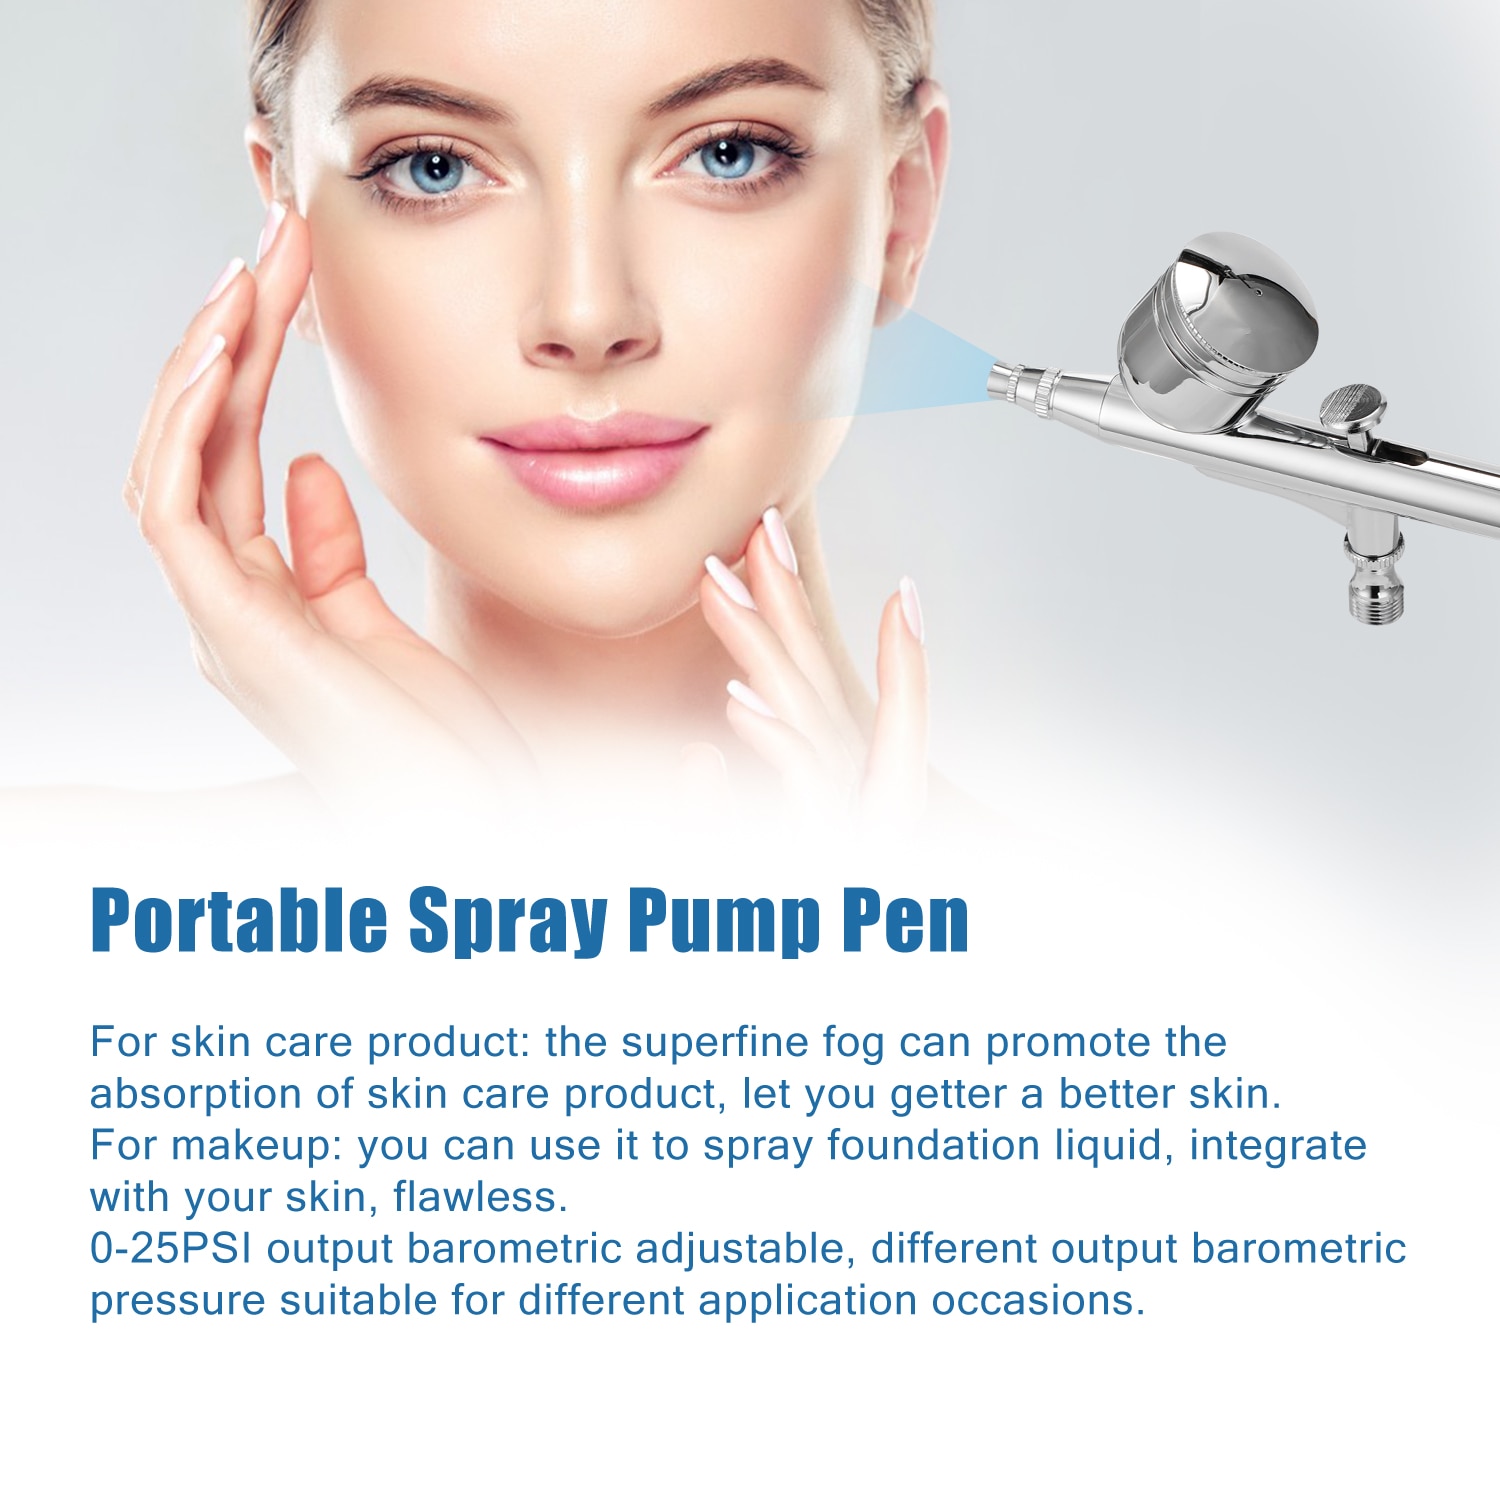 Bærbar malingspraypistol airbrush-sæt spraypumpe pen luftkompressorsæt til makeup kunst malerhåndværk